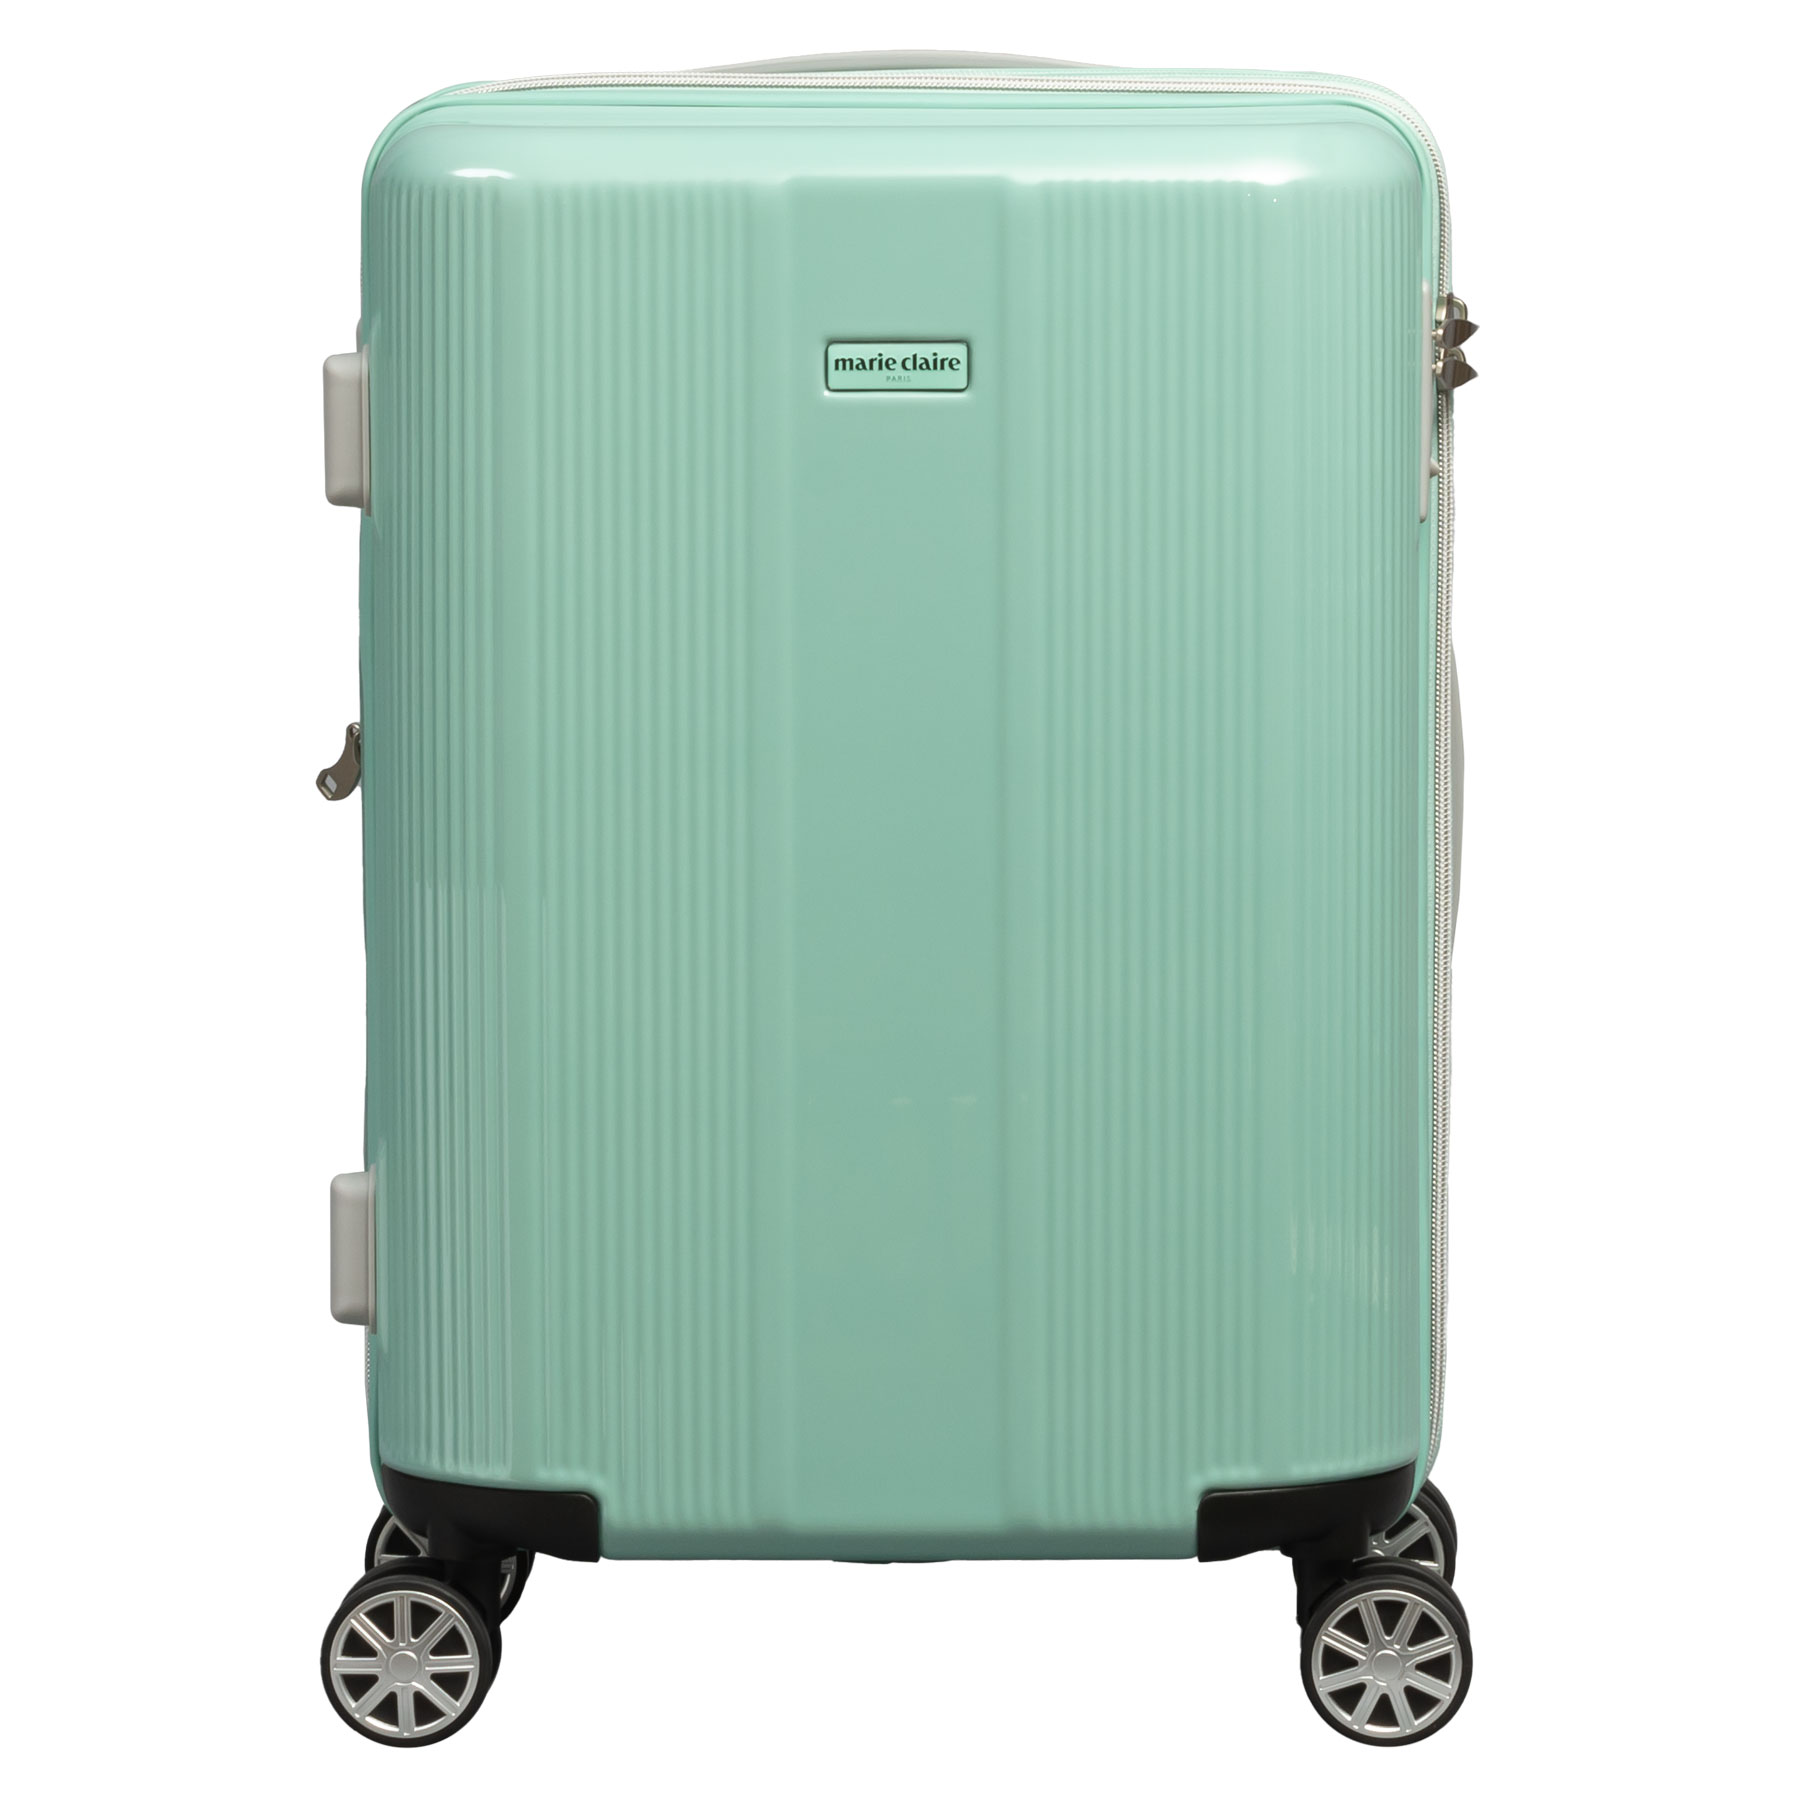 スーツケース Sサイズ 30〜35L marie claire マリ・クレール 機内持ち込み 1〜2泊 拡張 キャリーケース 240-5000